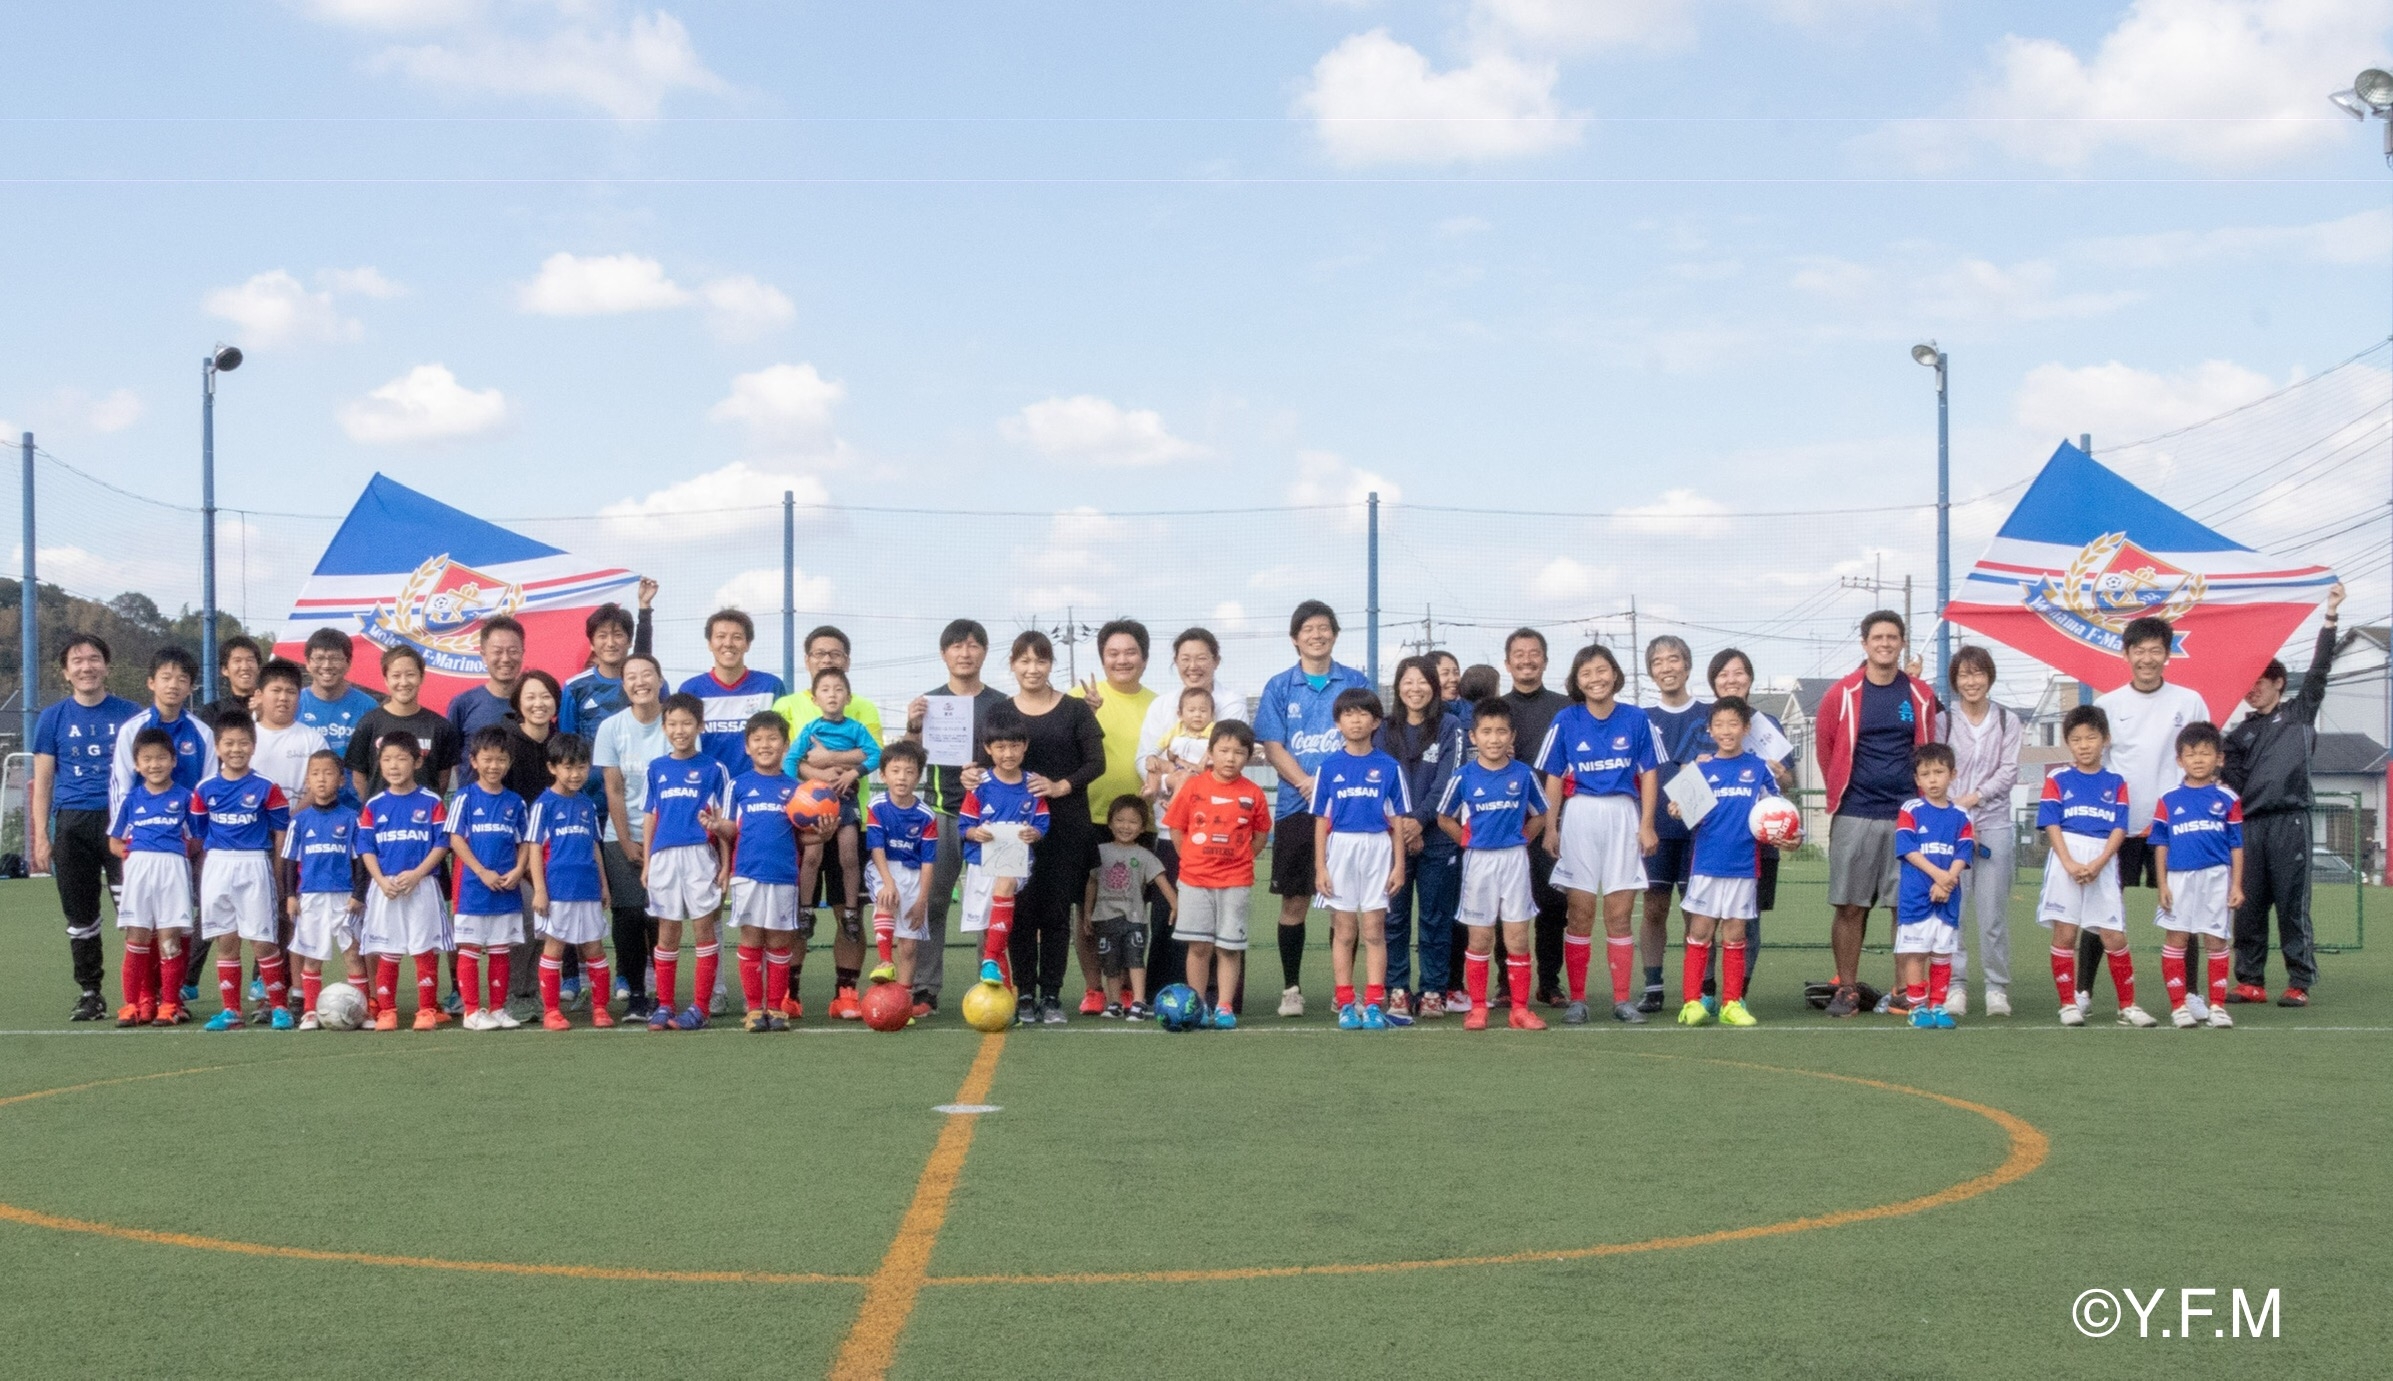 ずっとenjoy 横浜f マリノスが 3on3 Family Soccer Day を開催 Jfa 公益財団法人日本サッカー協会